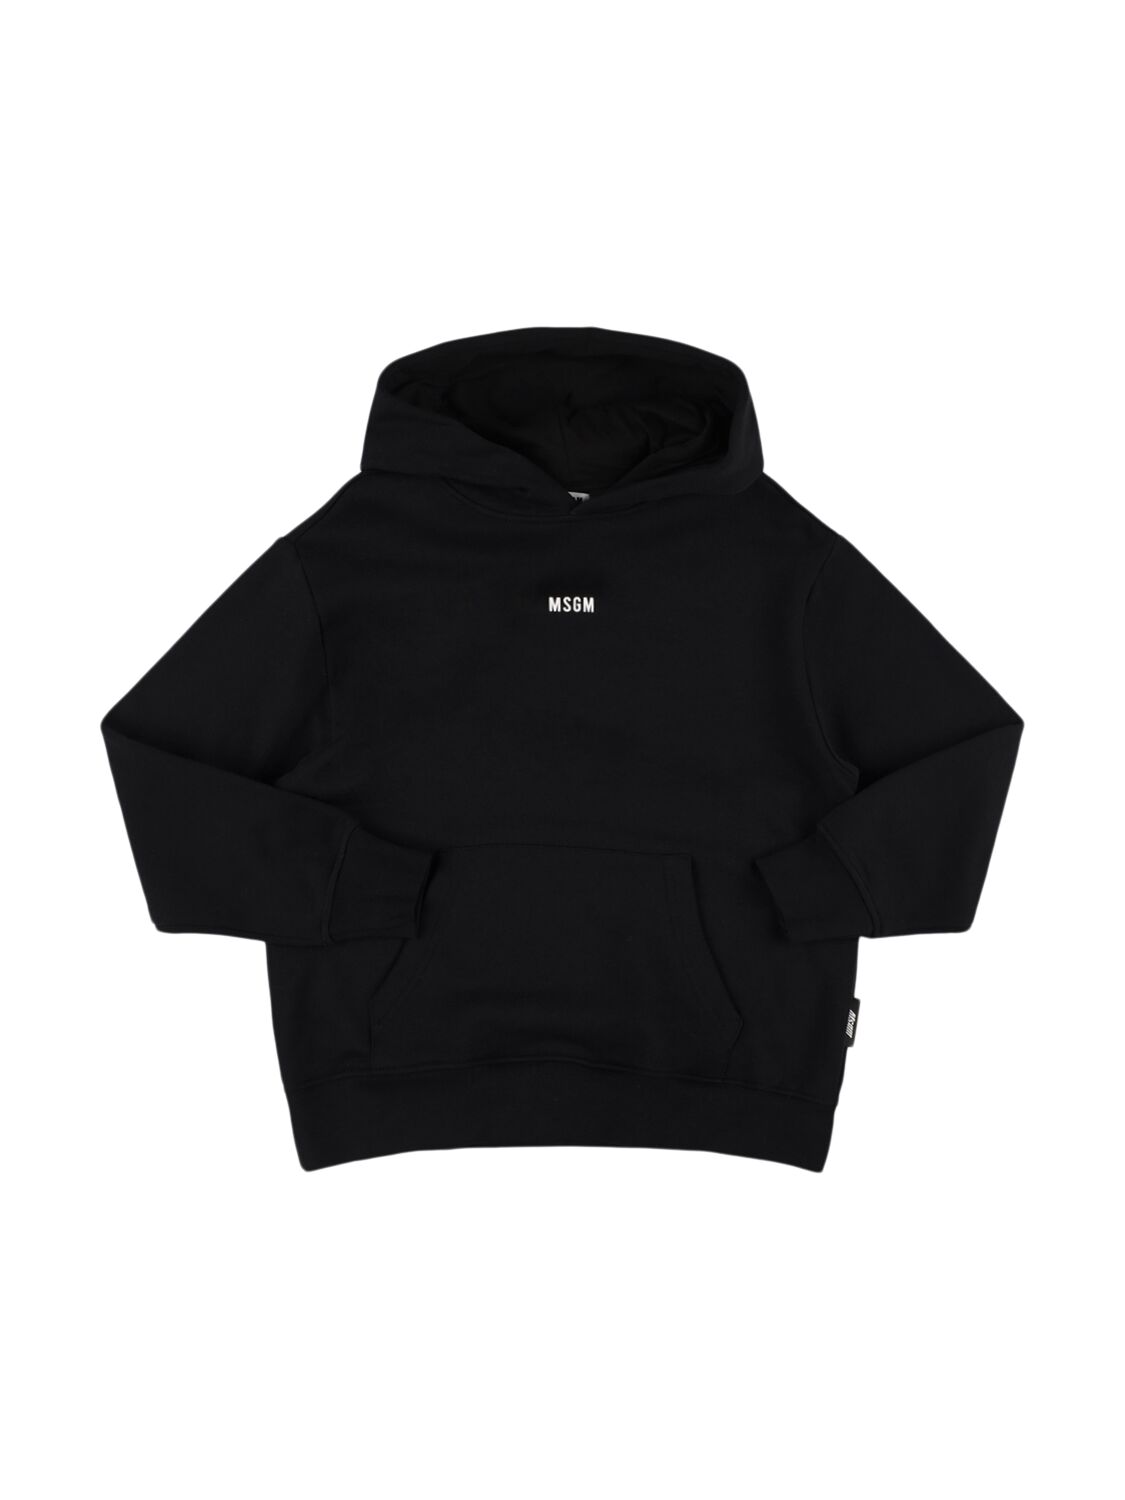 Msgm Printed Cotton Sweatshirt Hoodie In Black